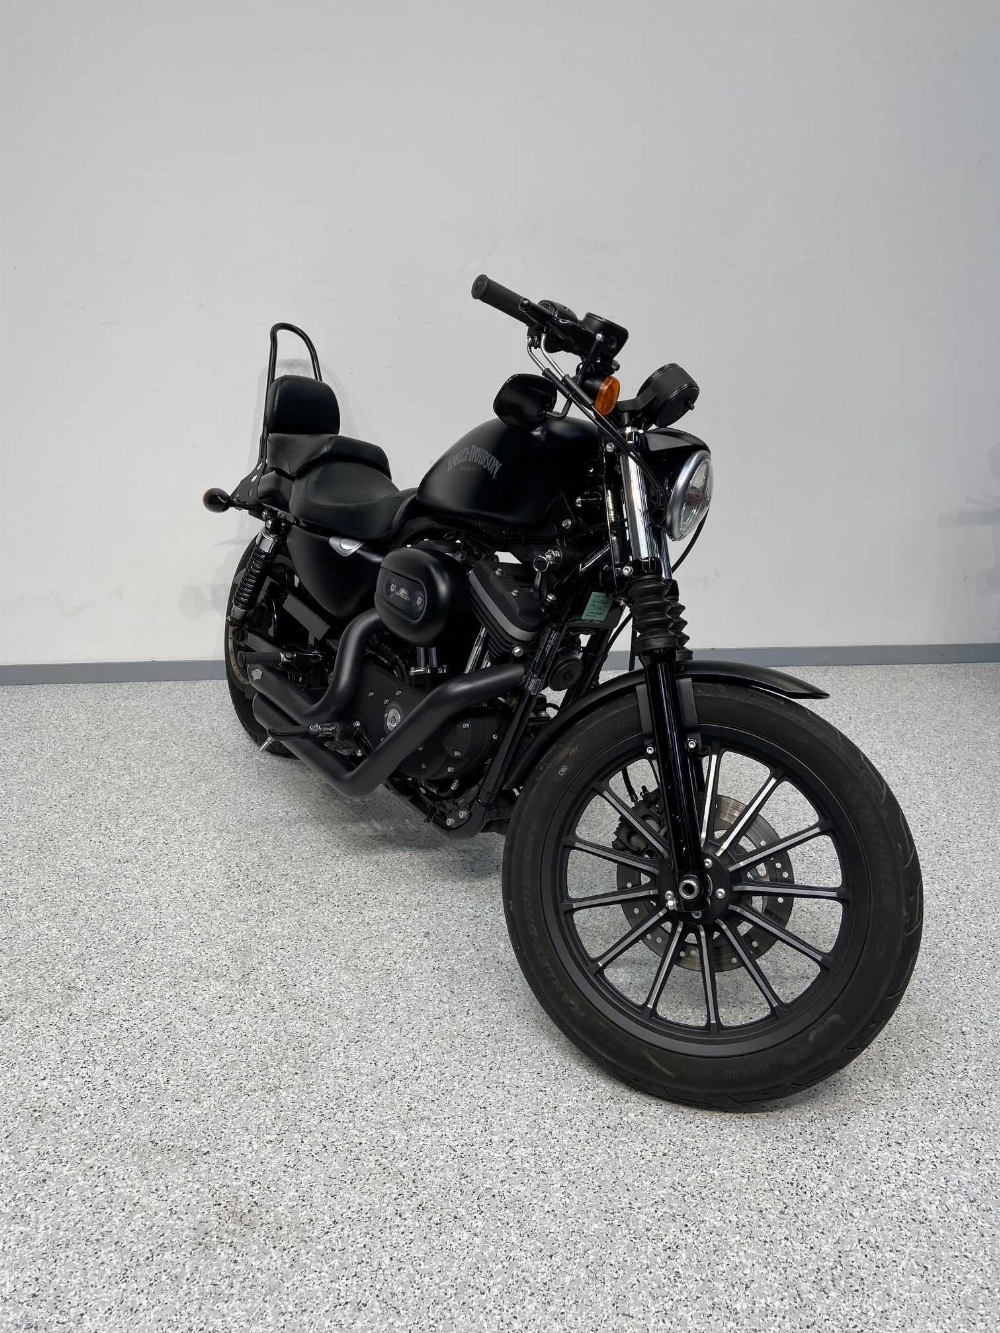 Harley-Davidson XL 2013 vue 3/4 droite